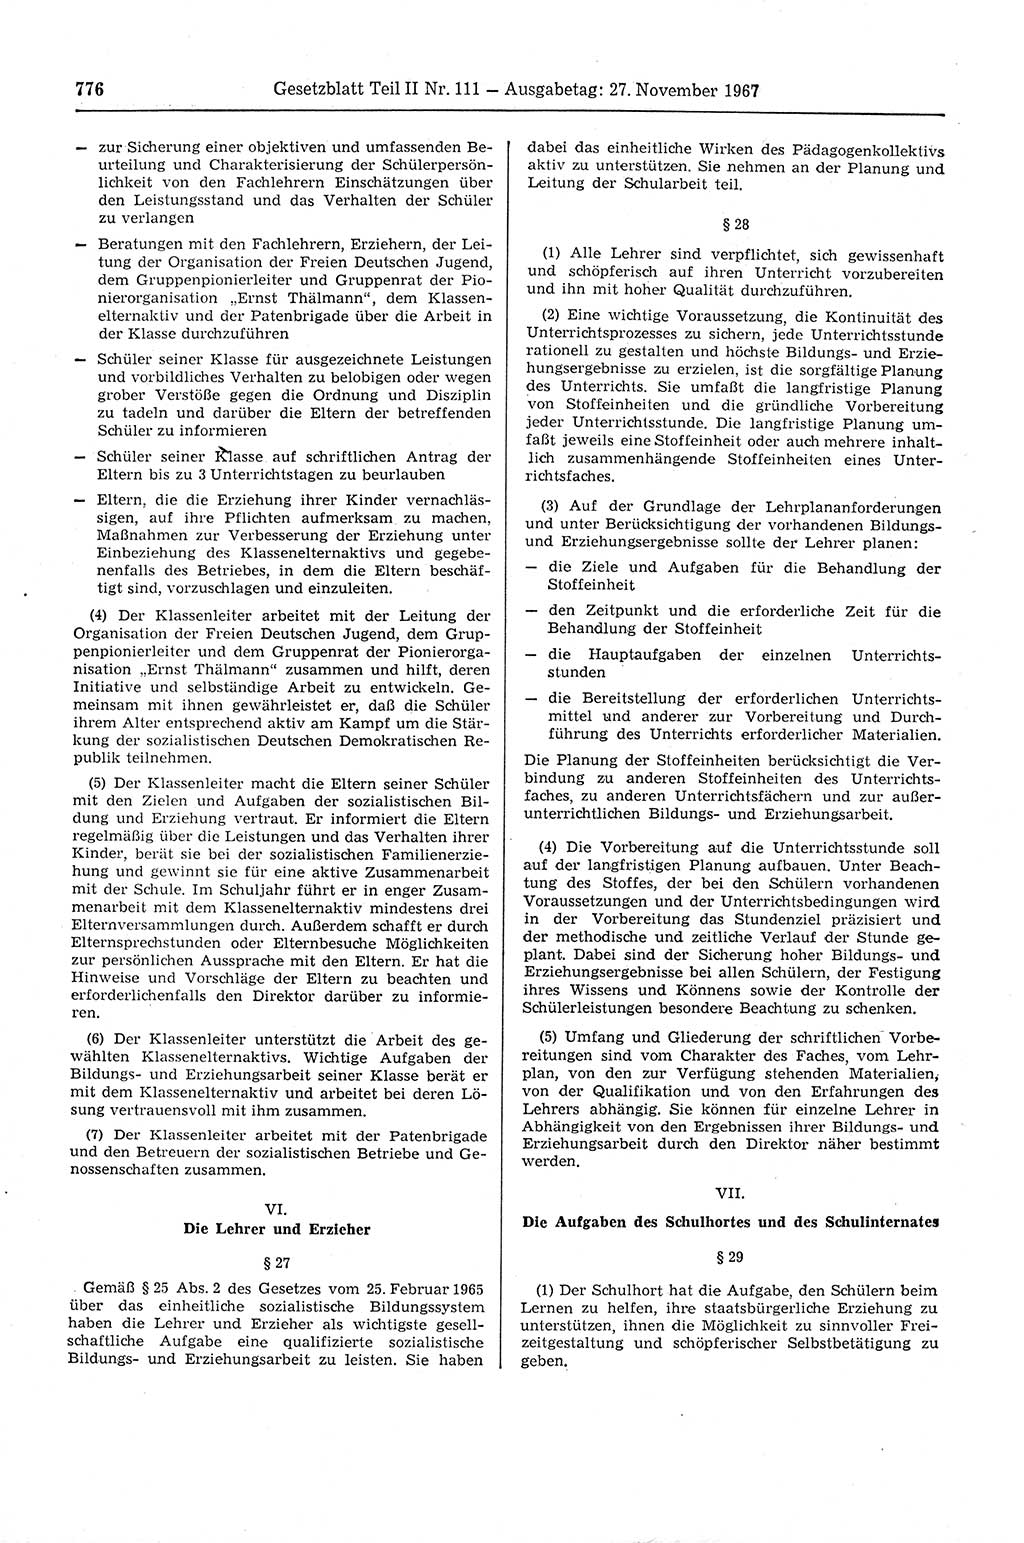 Gesetzblatt (GBl.) der Deutschen Demokratischen Republik (DDR) Teil ⅠⅠ 1967, Seite 776 (GBl. DDR ⅠⅠ 1967, S. 776)